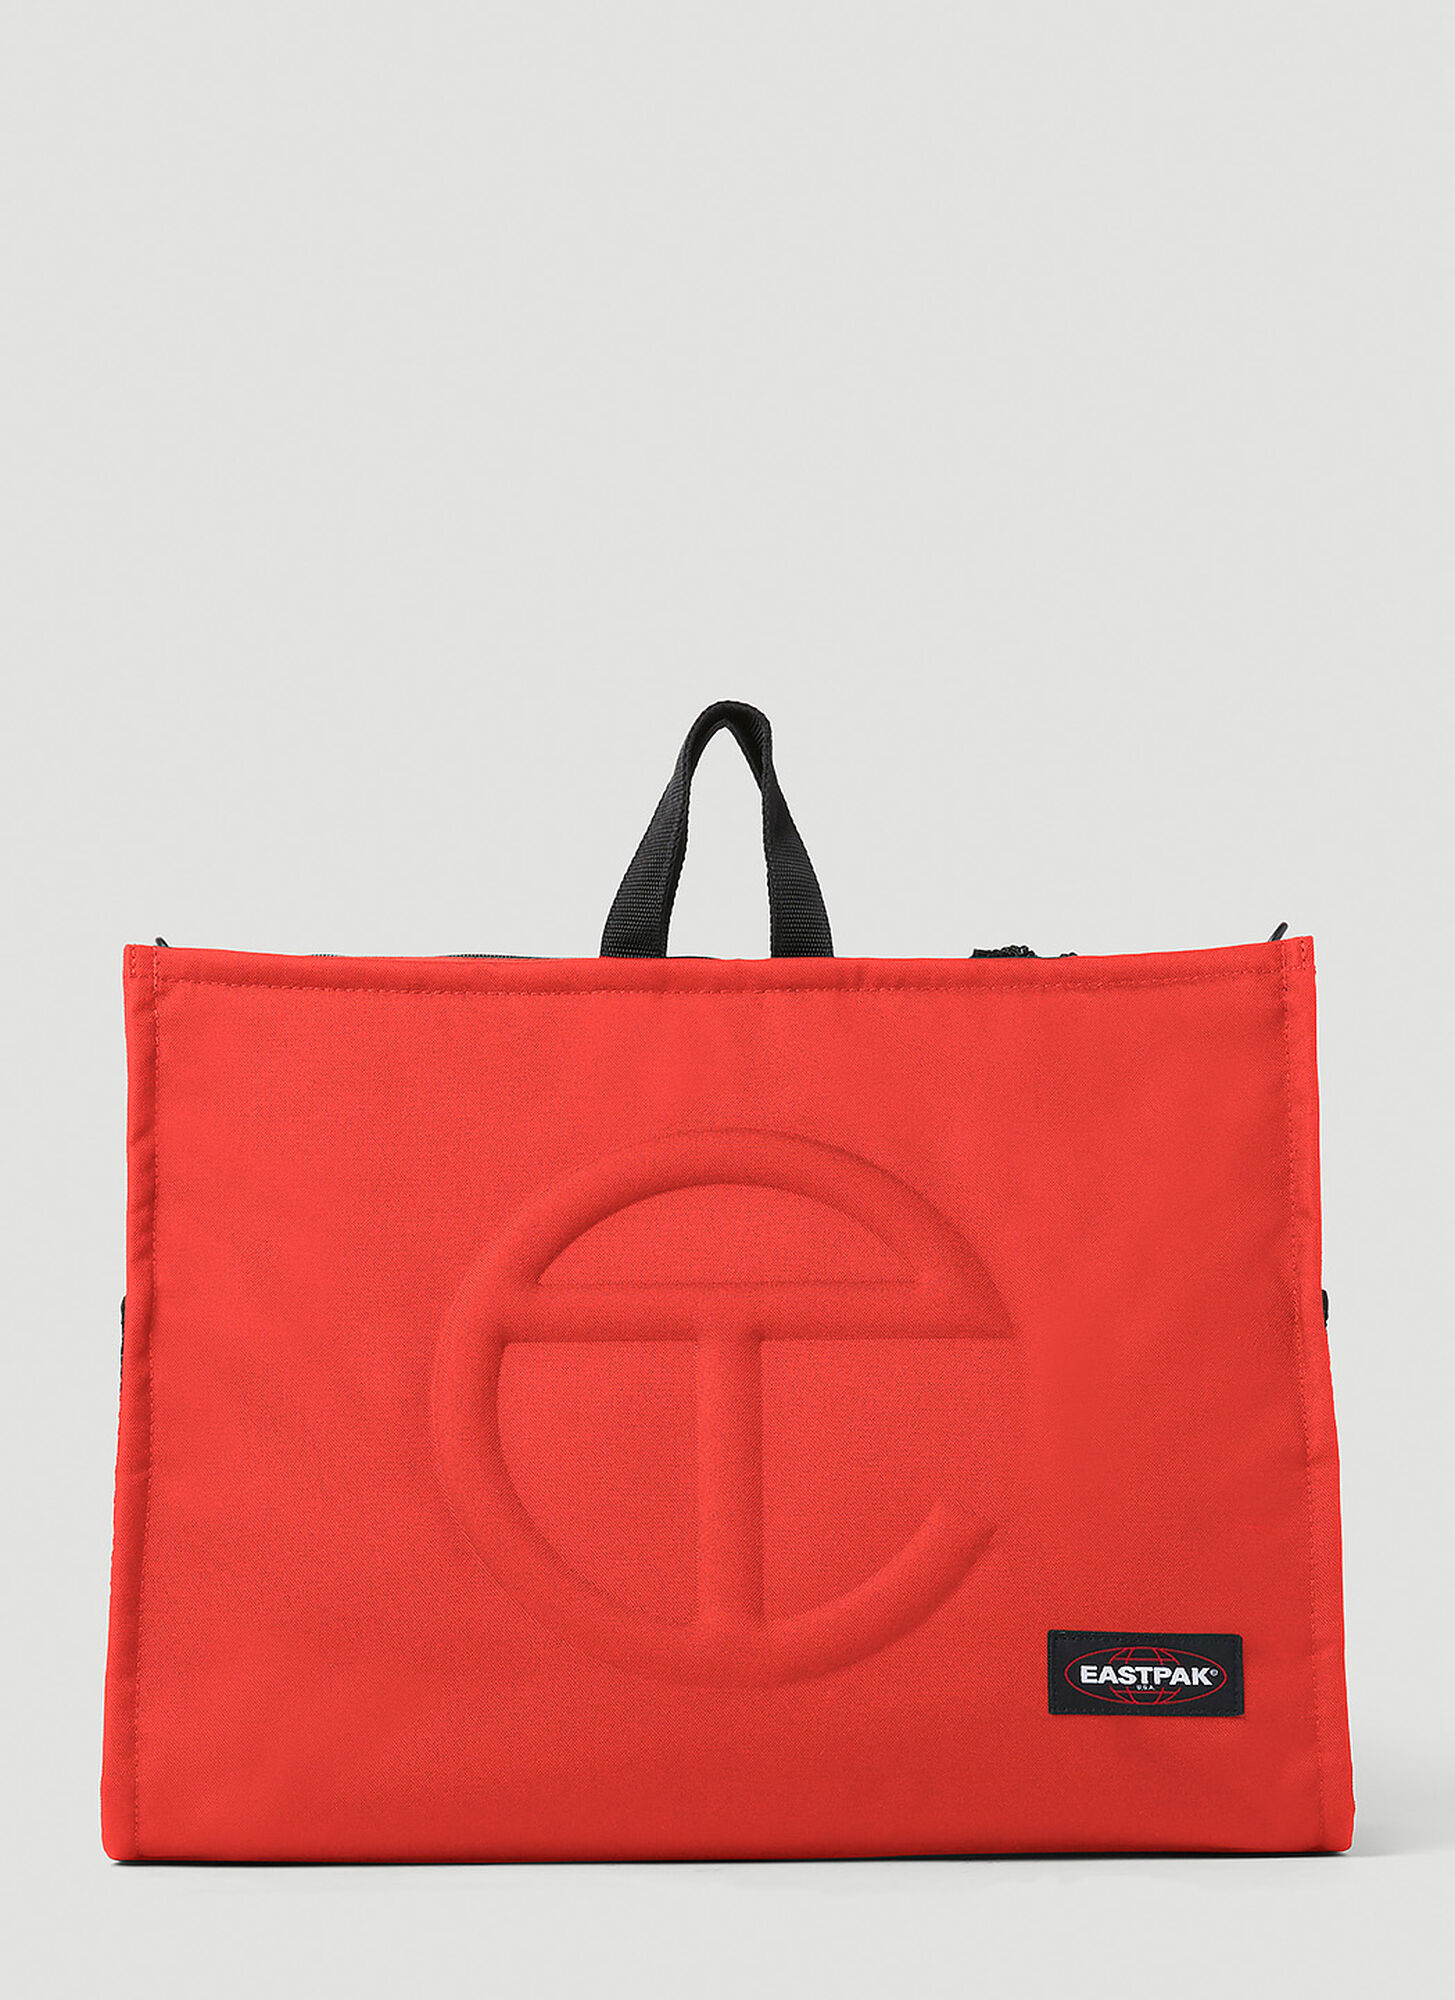 Eastpak X Telfar Shopper Large Tote Bag Unisex Red